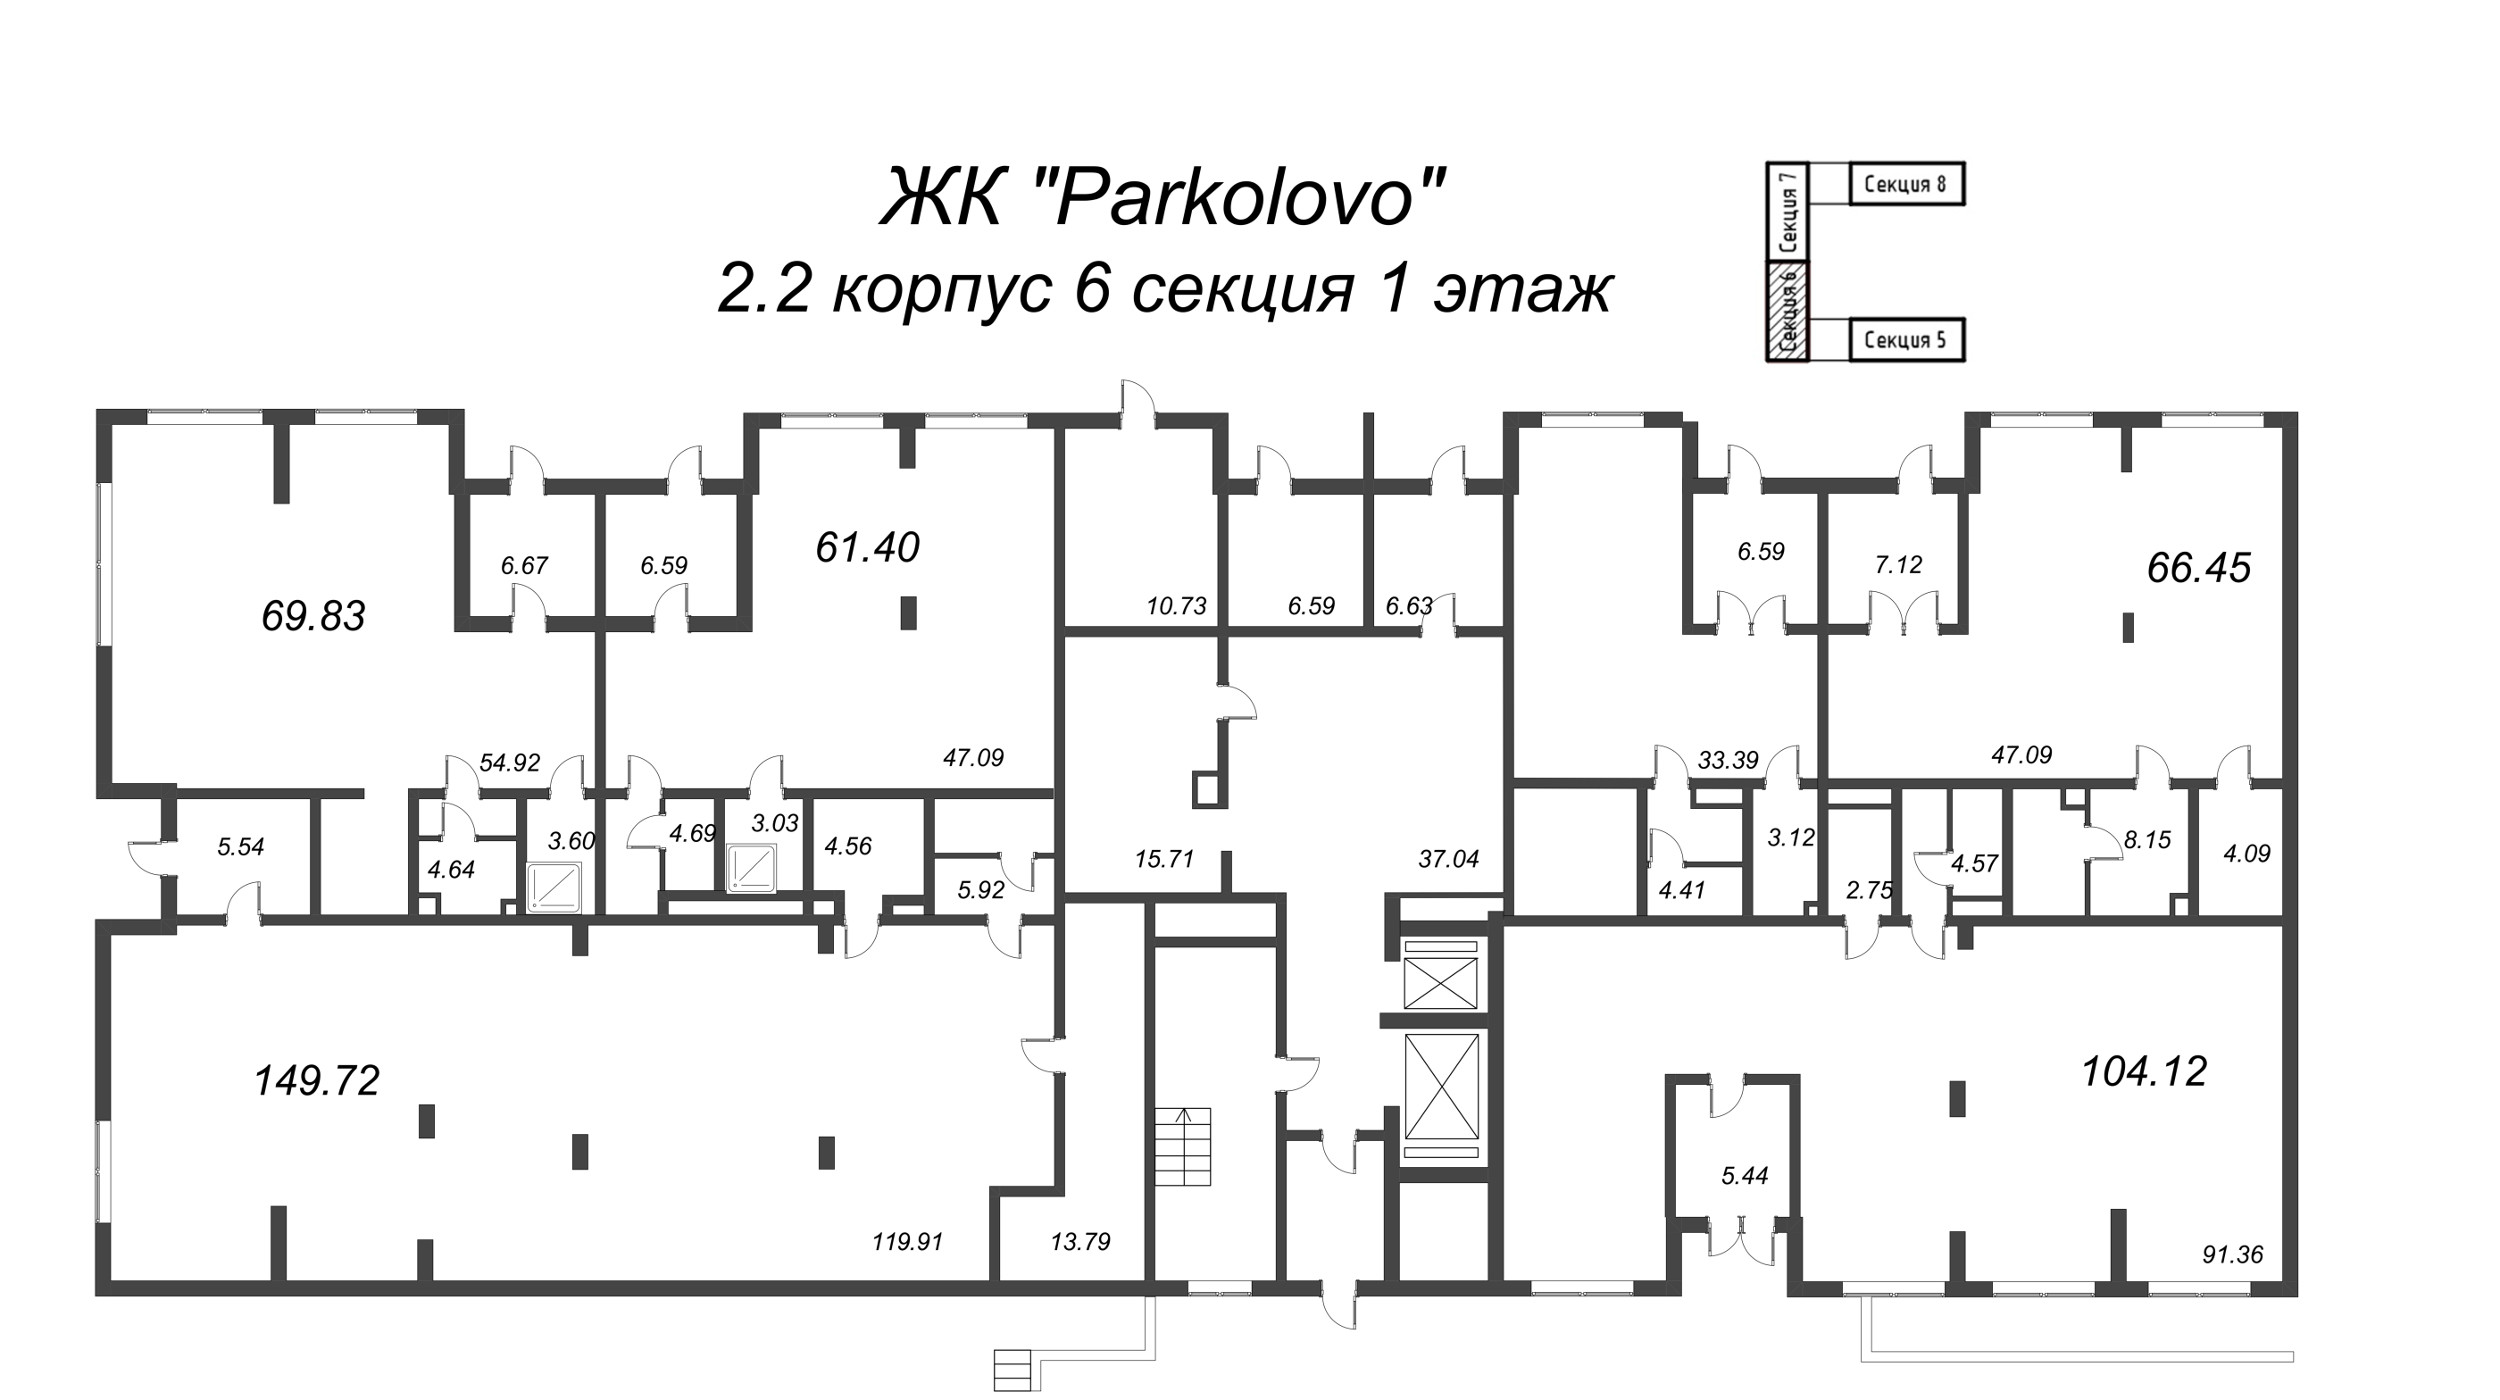 Помещение, 149.72 м² - планировка этажа